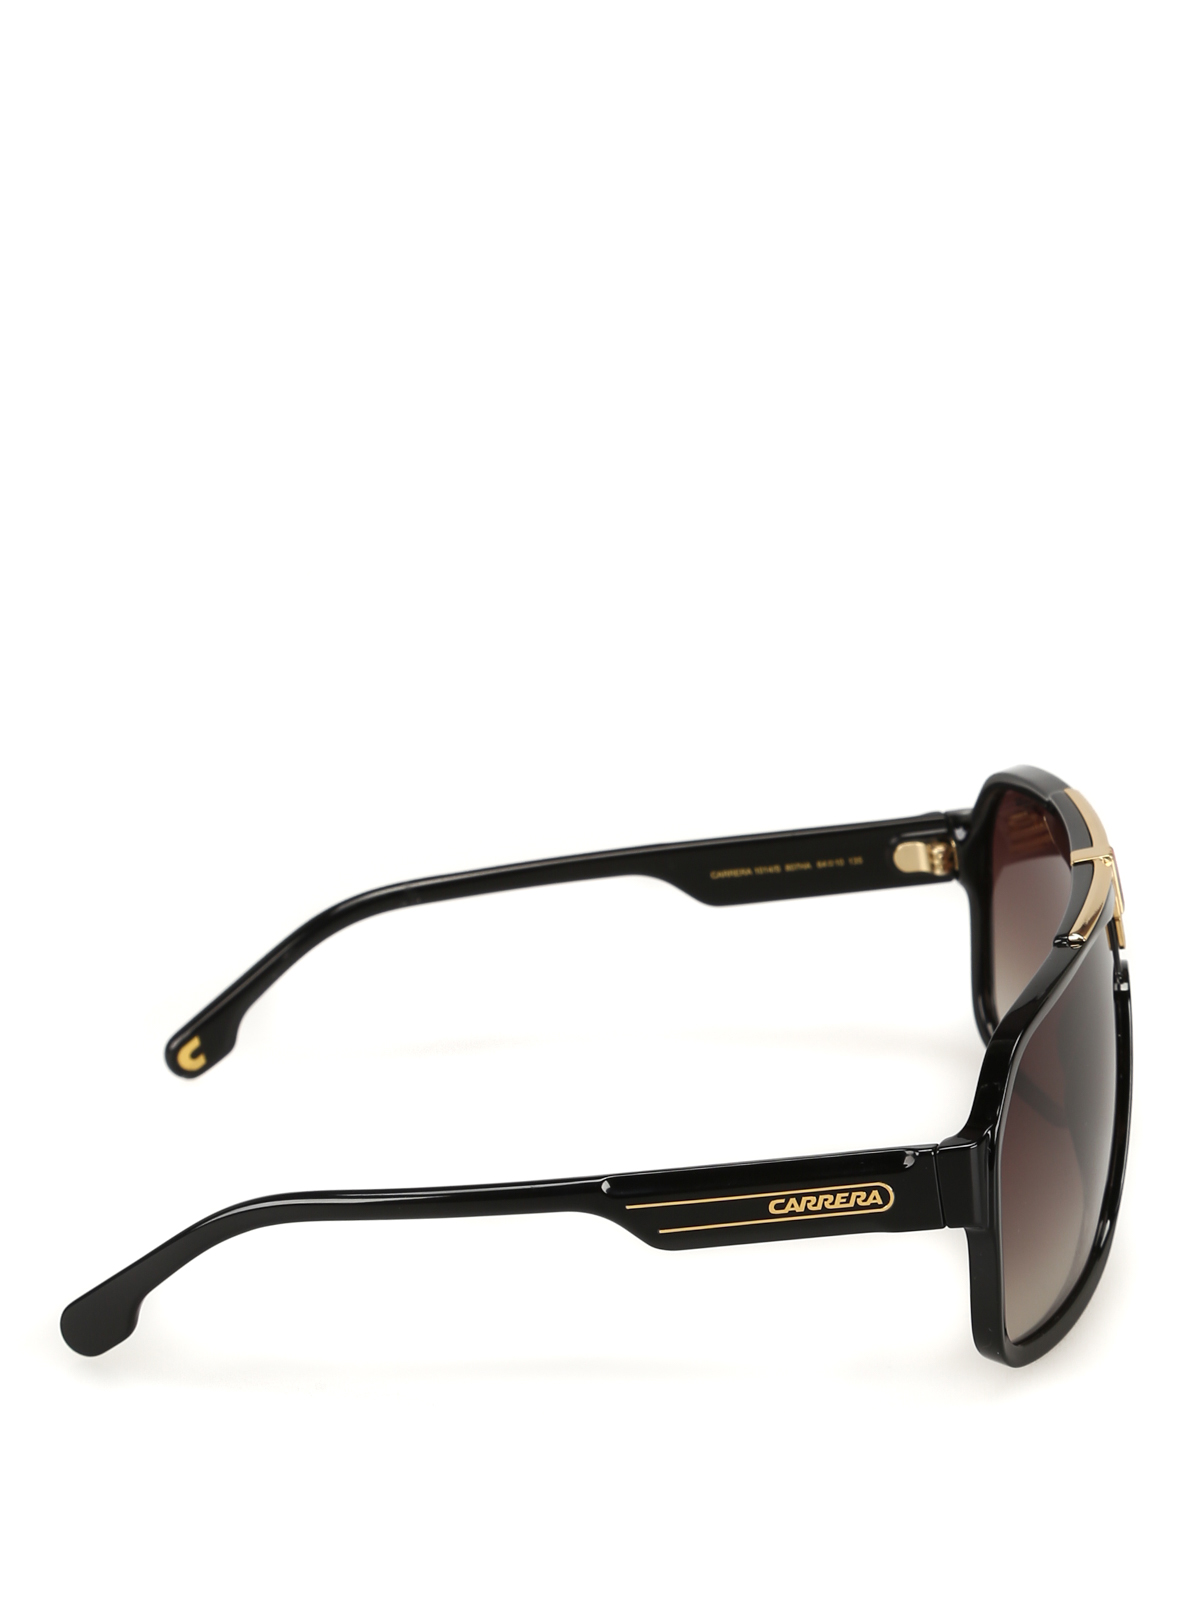 Sunglasses Carrera - Carrera flag aviator sunglasses - 1014S807HABLACK